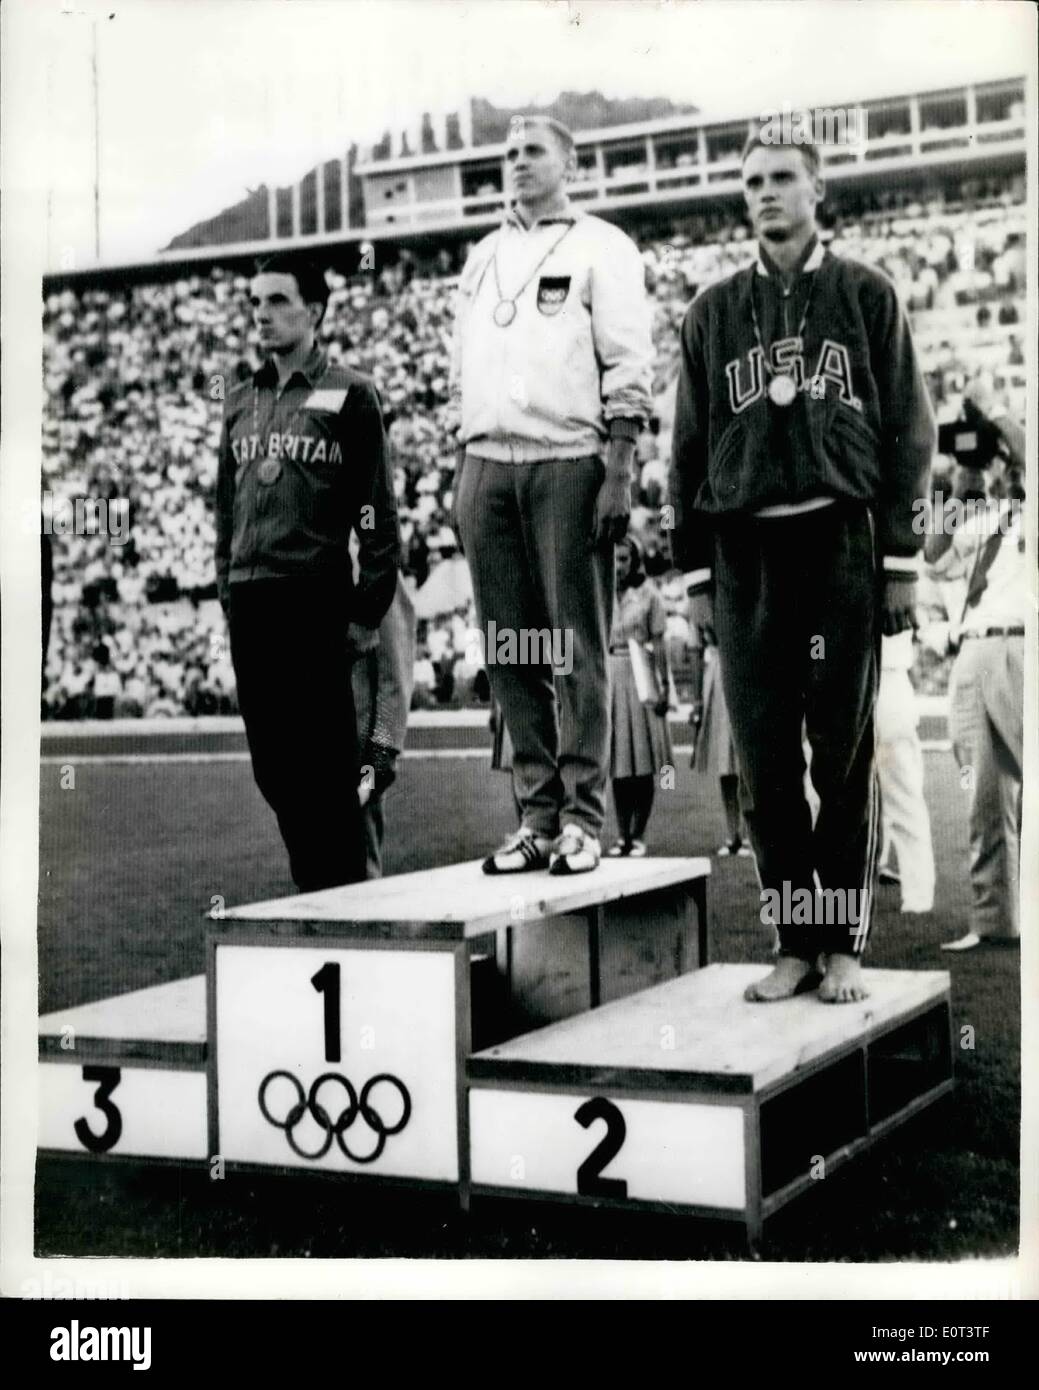 Sept. 09, 1960 - Olympische Spiele In Rom Bronze Medaille für Radford in  100 Meter Finale; Armin Hart, Deutschlands, der Weltrekordhalter gewann  heute die Olympiasieger über 100 Meter Finale in 10,2 Sekunden.